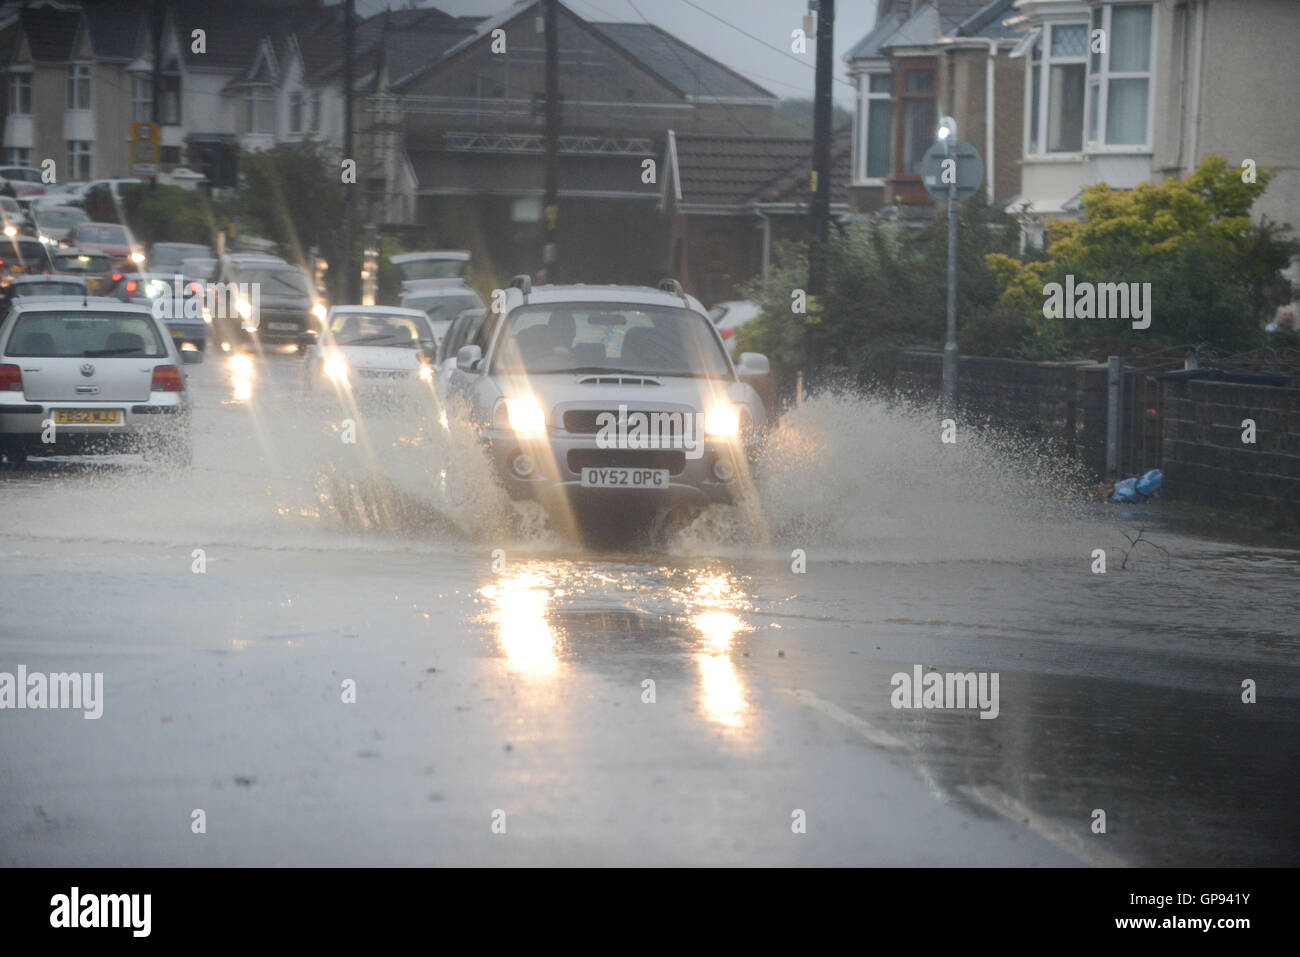 Swansea, Pays de Galles, Royaume-Uni. 3 Septembre, 2016. Nouvelles inondations qui ont frappé la ville de Pontardawe au Swansea comme de fortes précipitations dans le sud du Pays de Galles, ce qui cause des problèmes dans la région. Crédit : Robert Melen/Alamy Live News. Banque D'Images